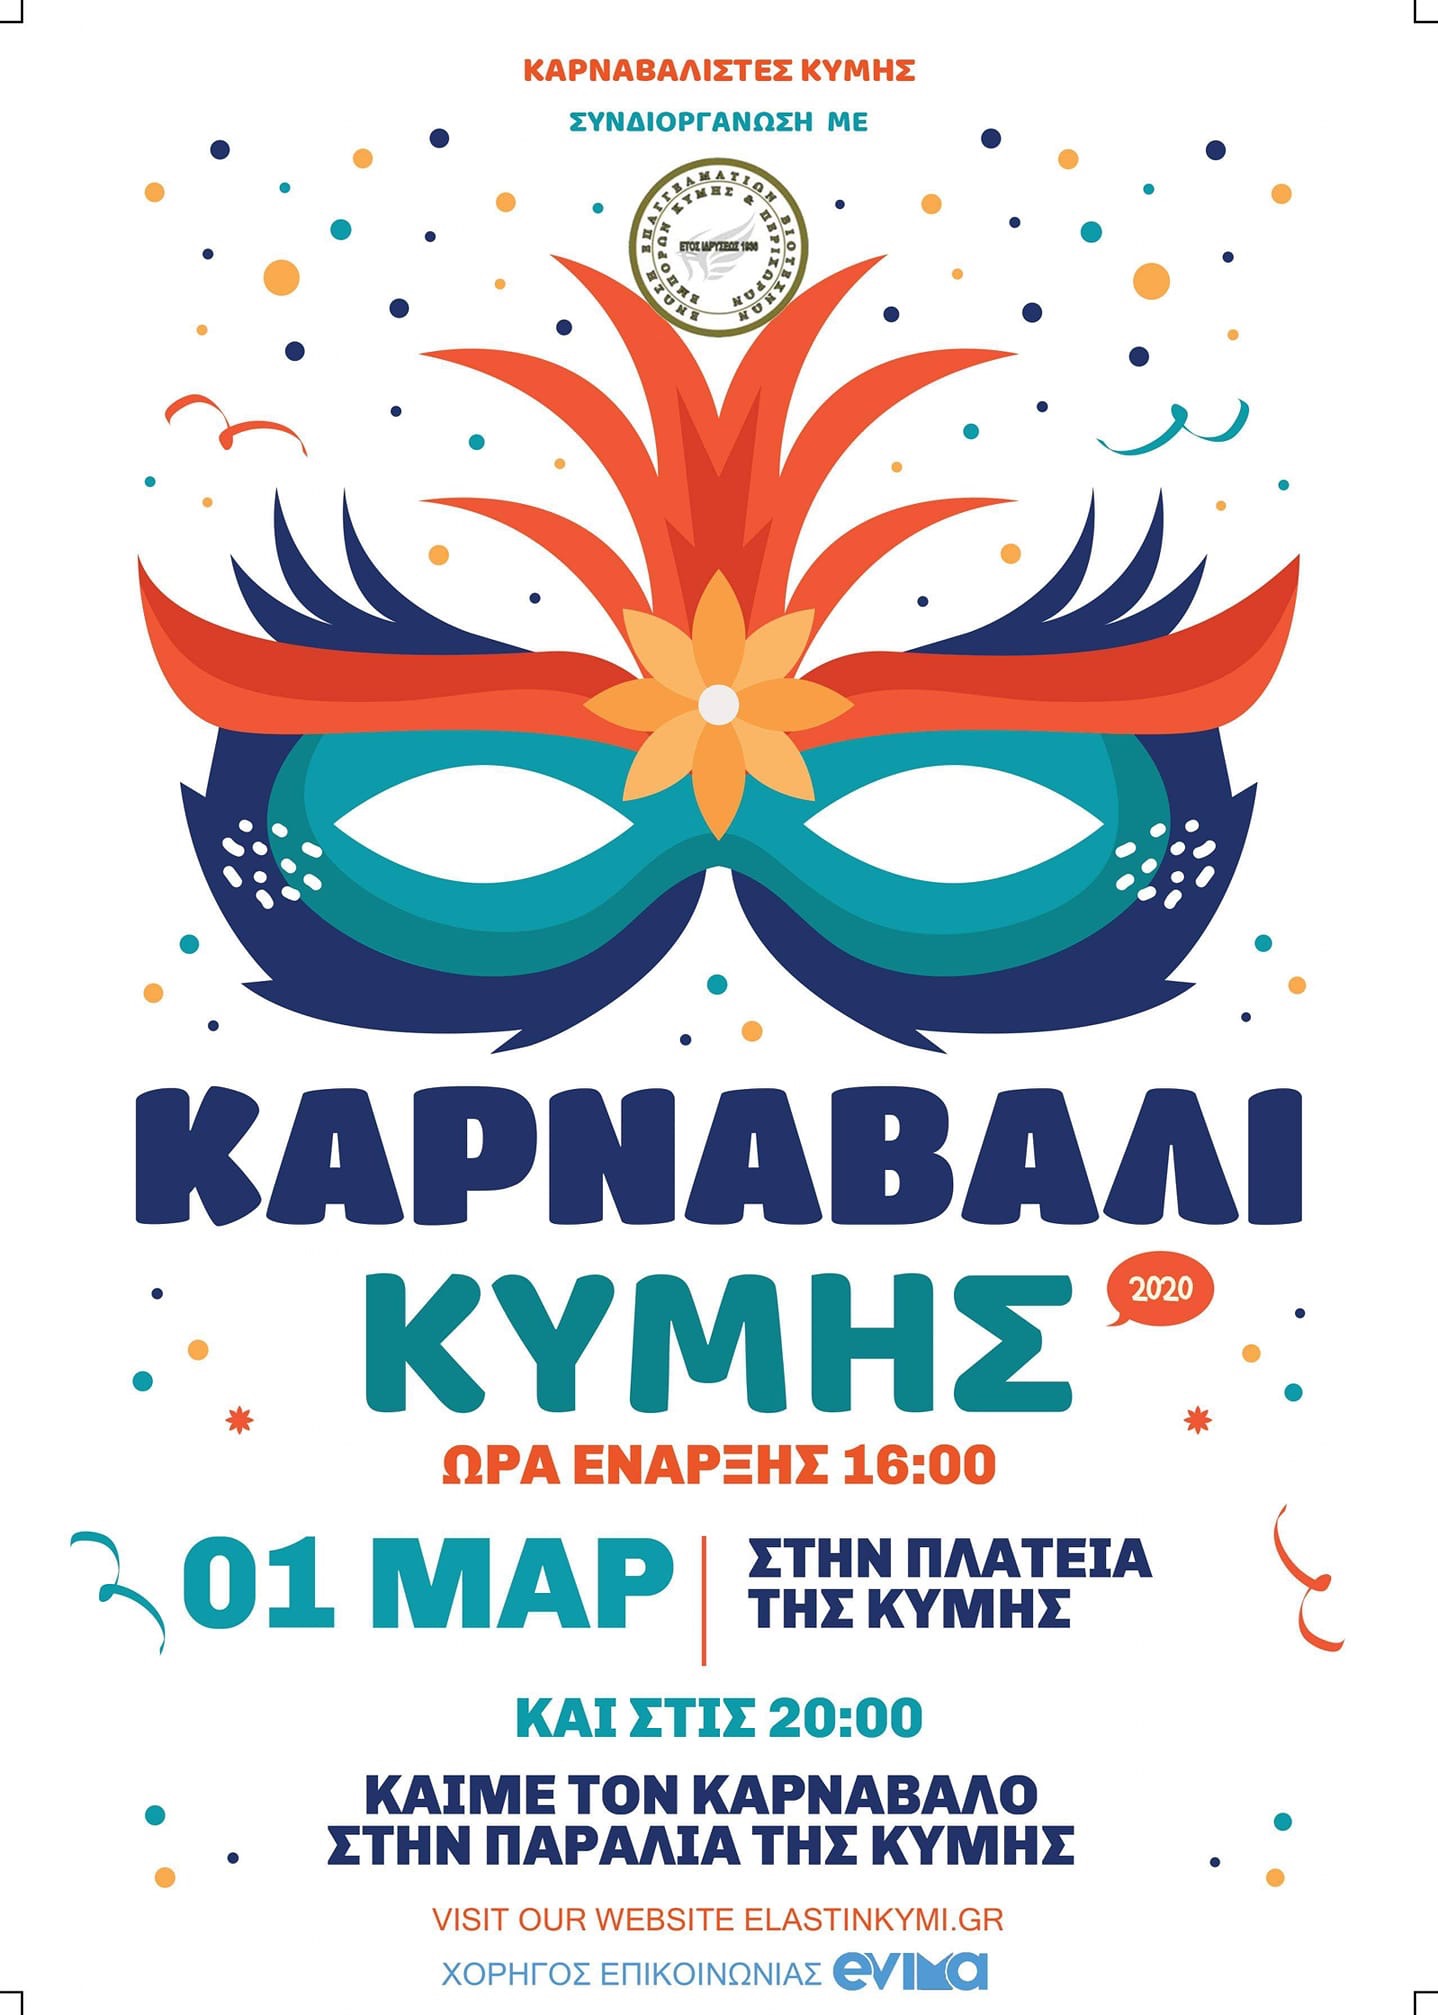 Έρχεται το Καρναβάλι της Κύμης-Χορηγός επικοινωνίας το evima.gr